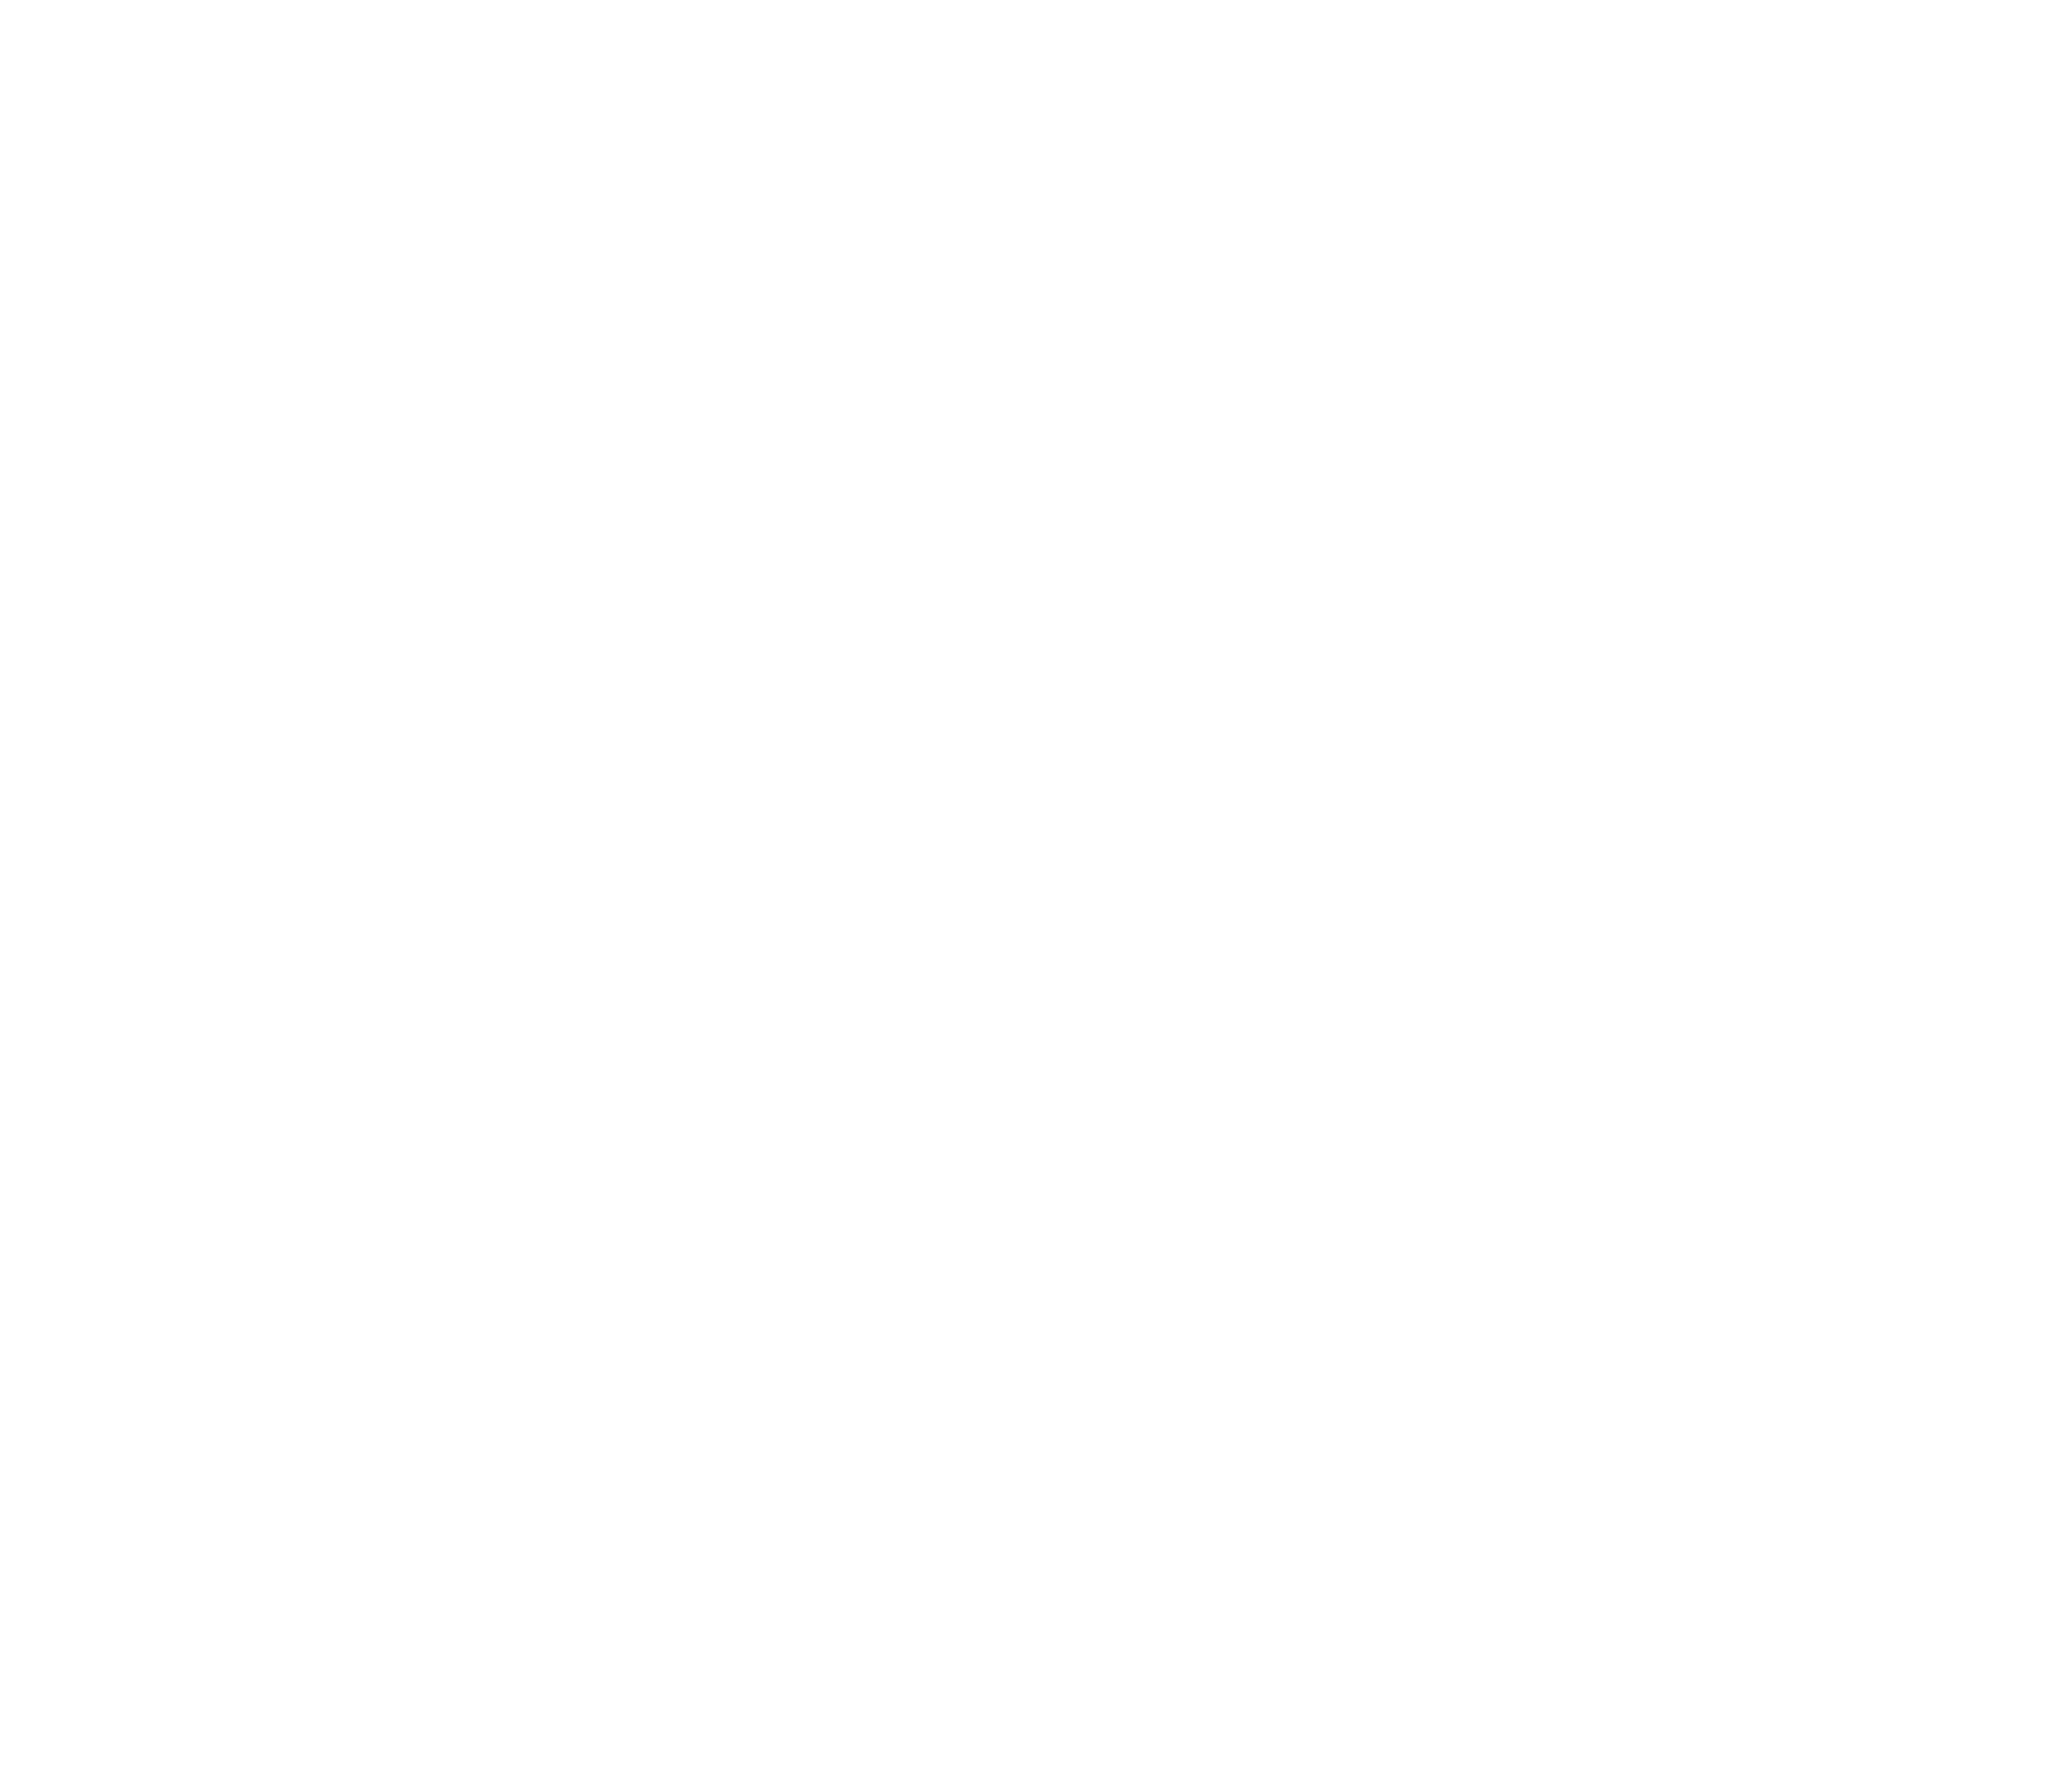 Tjieskeek on a Stick